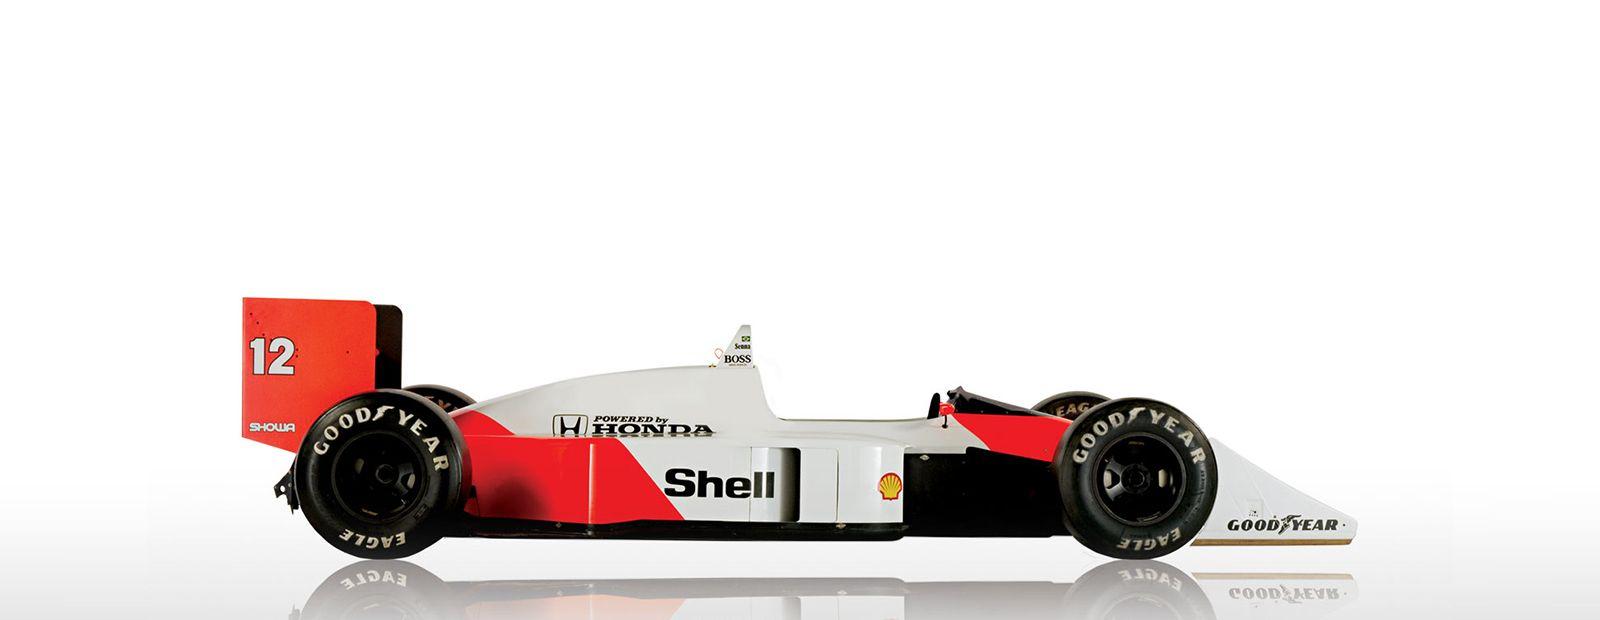 McLaren F1 Racing Logo - McLaren Formula 1 - Heritage - Cars